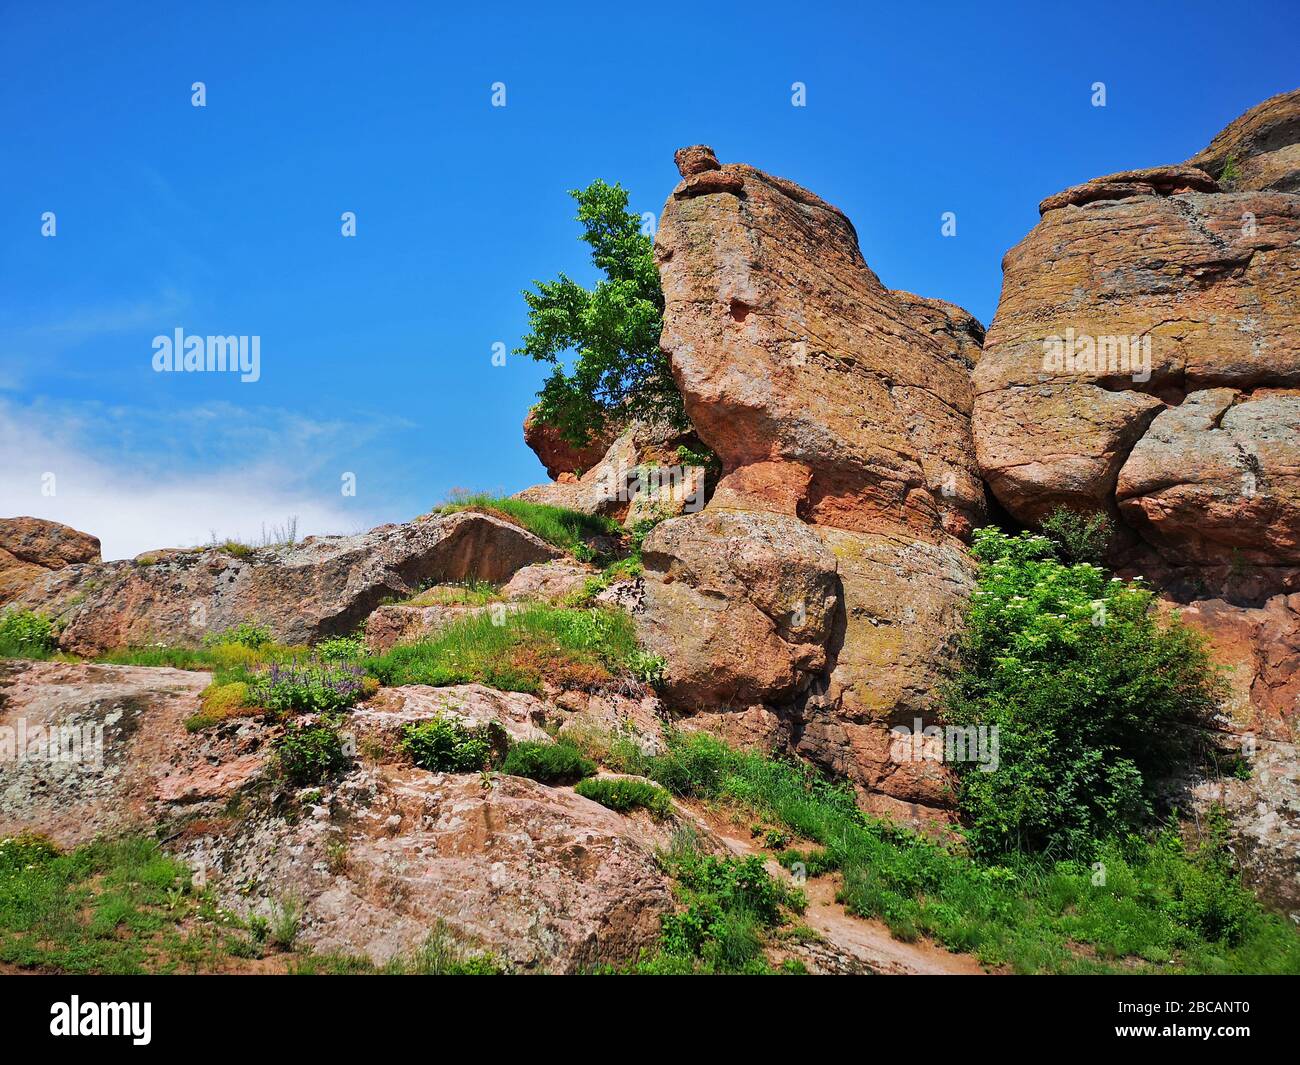 Végétation luxuriante parmi les formations rocheuses rouges au Belogradchick Rocks, en Bulgarie, une destination européenne de voyage étonnante avec de beaux paysages Banque D'Images